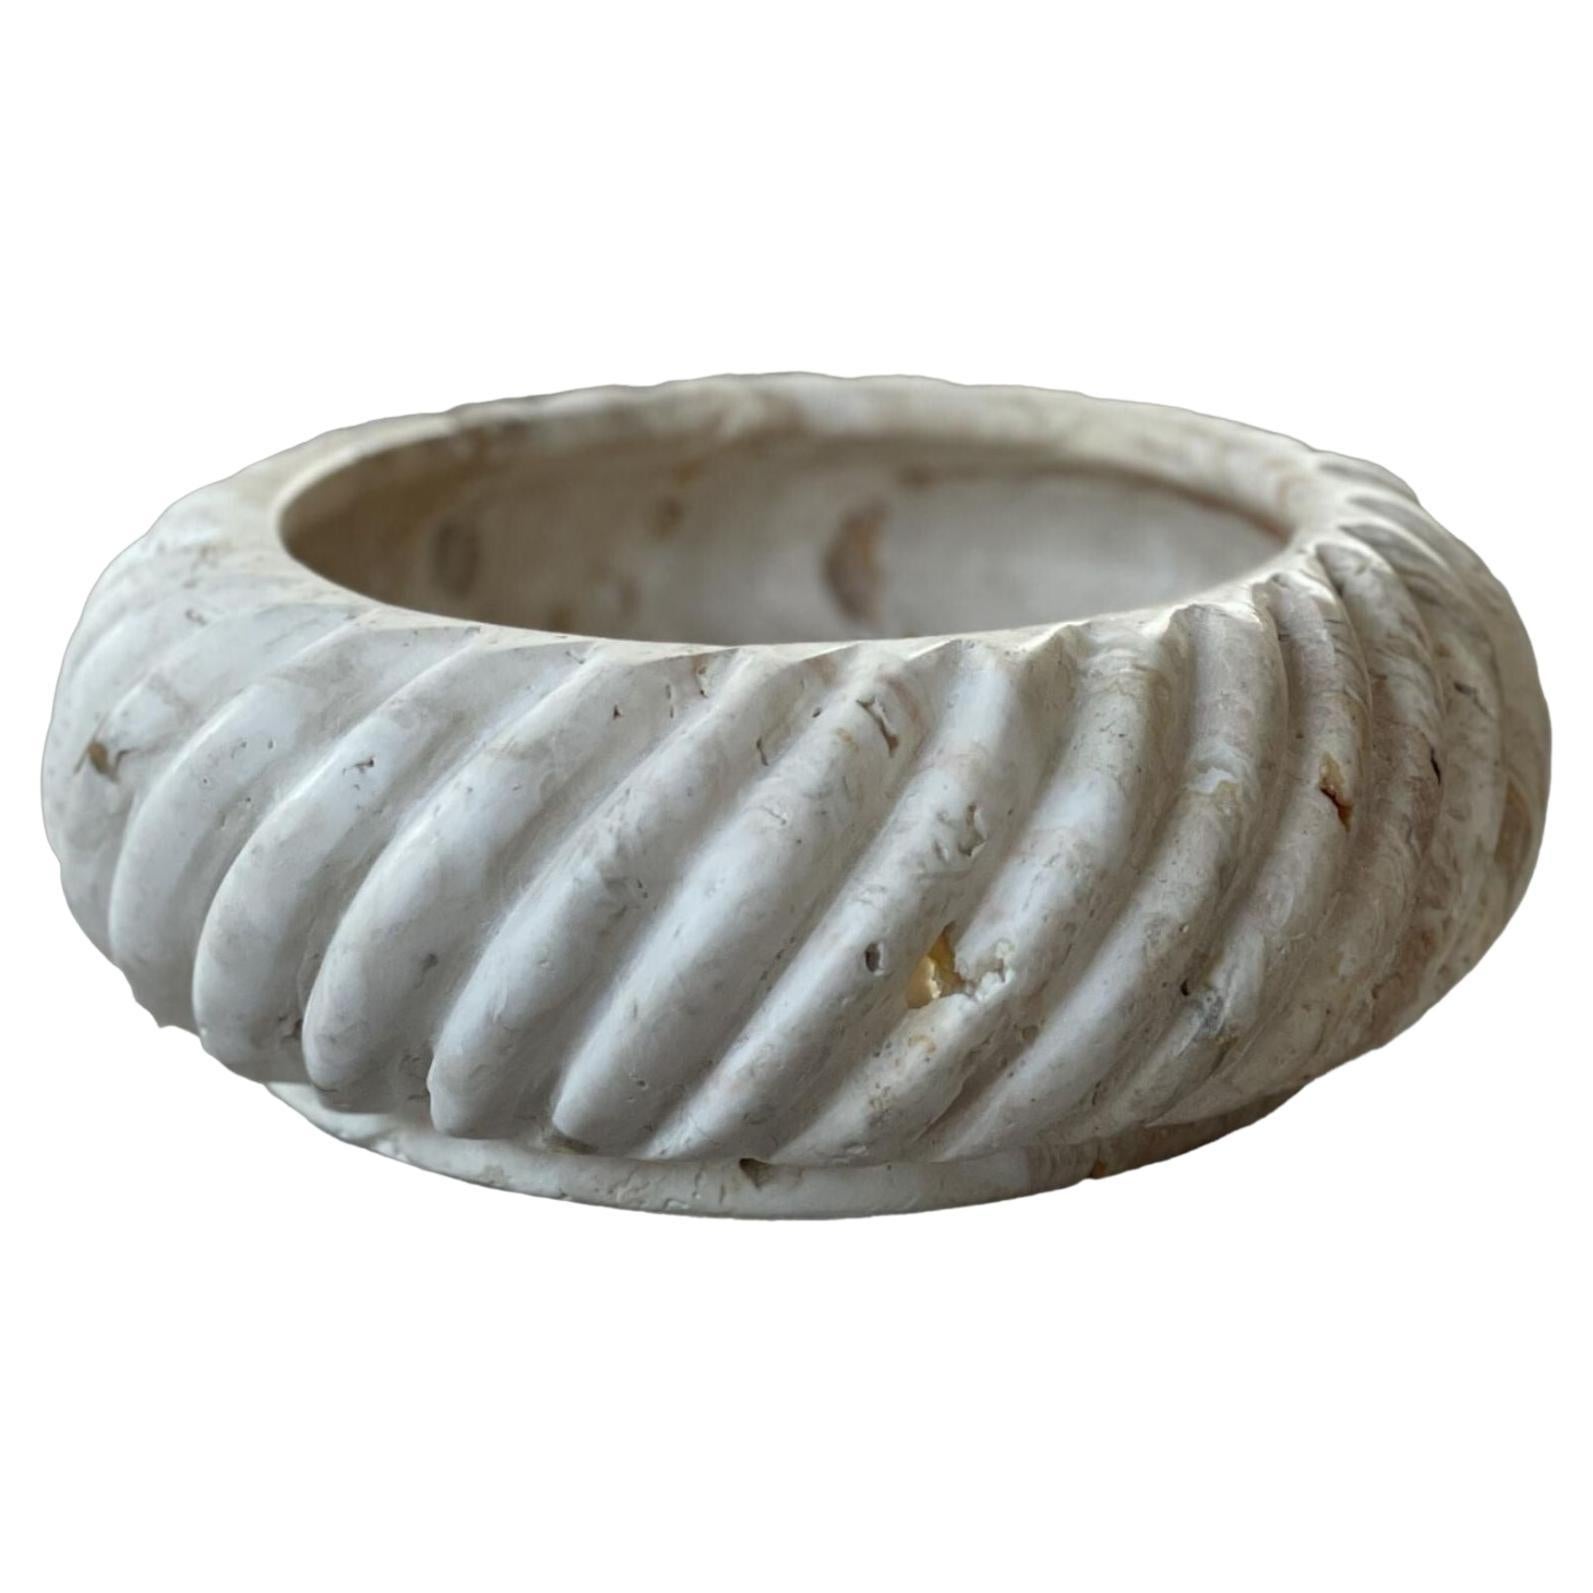 Cruller-Schale: Biscotti-Schale aus Stein mit gedrehtem Rand in Beige von Anastasio Home